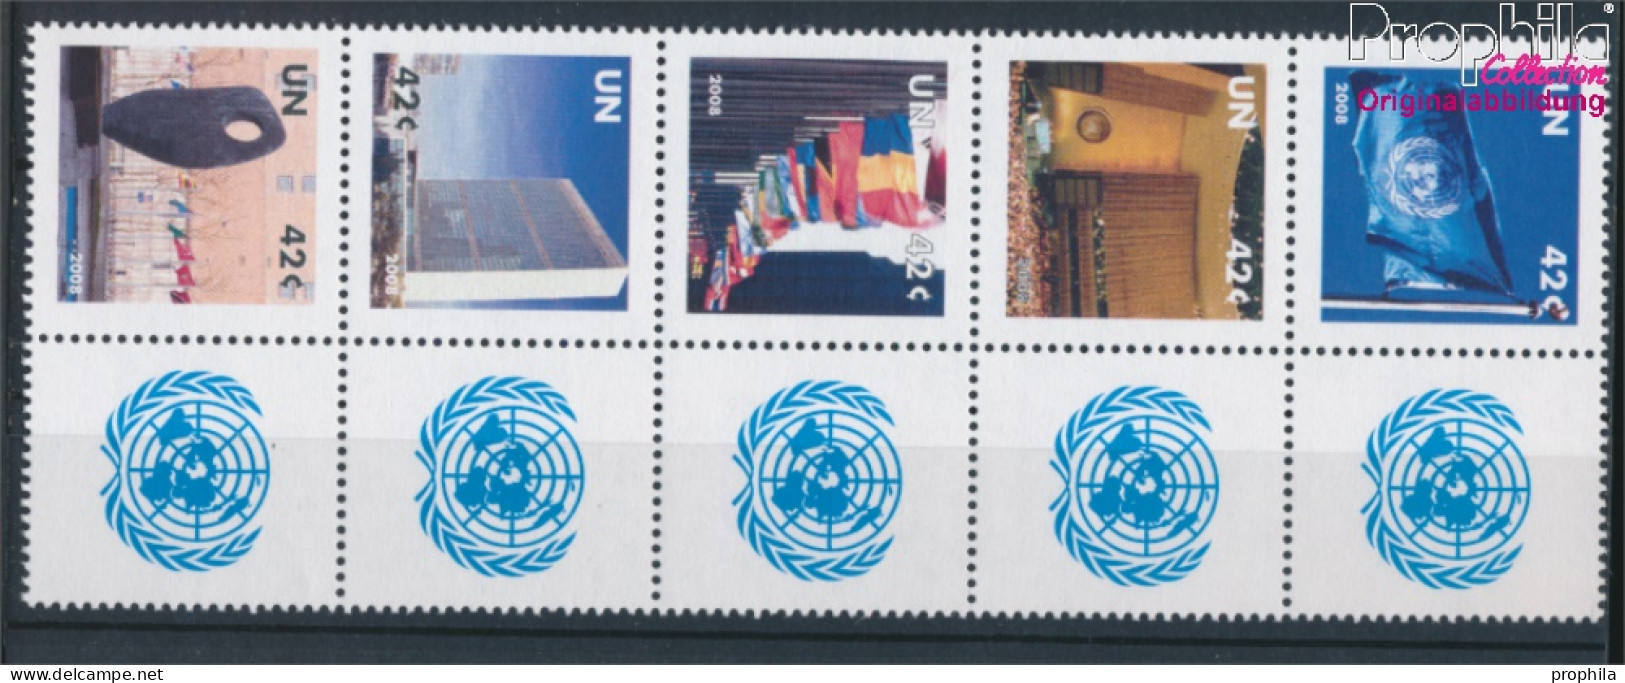 UNO - New York 1091-1095 Zehnerblock (kompl.Ausg.) Postfrisch 2008 Grußmarken (10325900 - Unused Stamps